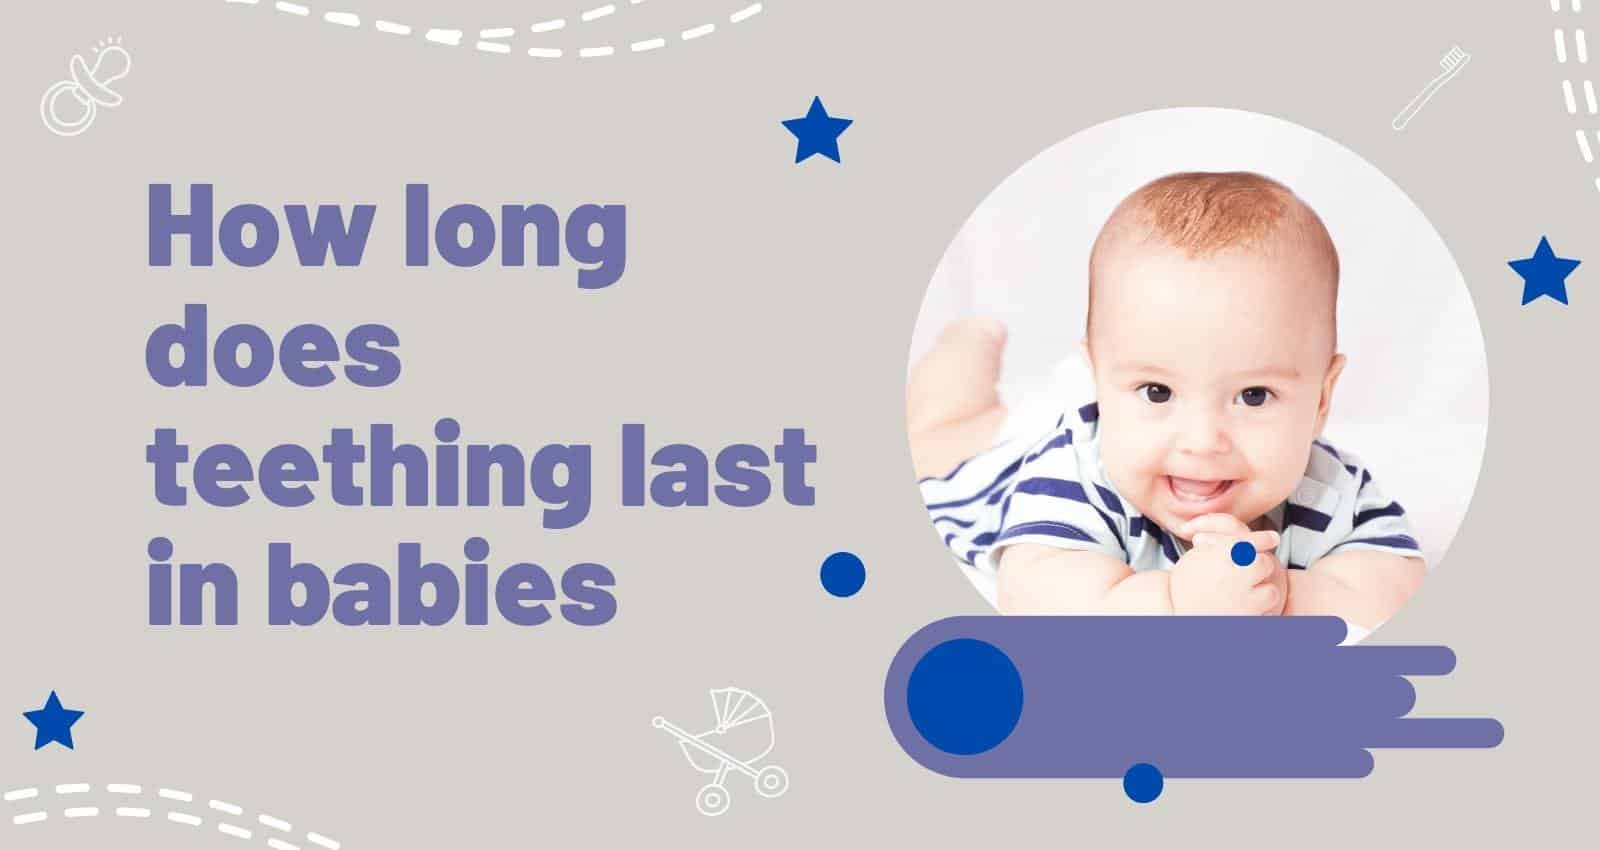 How long does teething last in babies? –